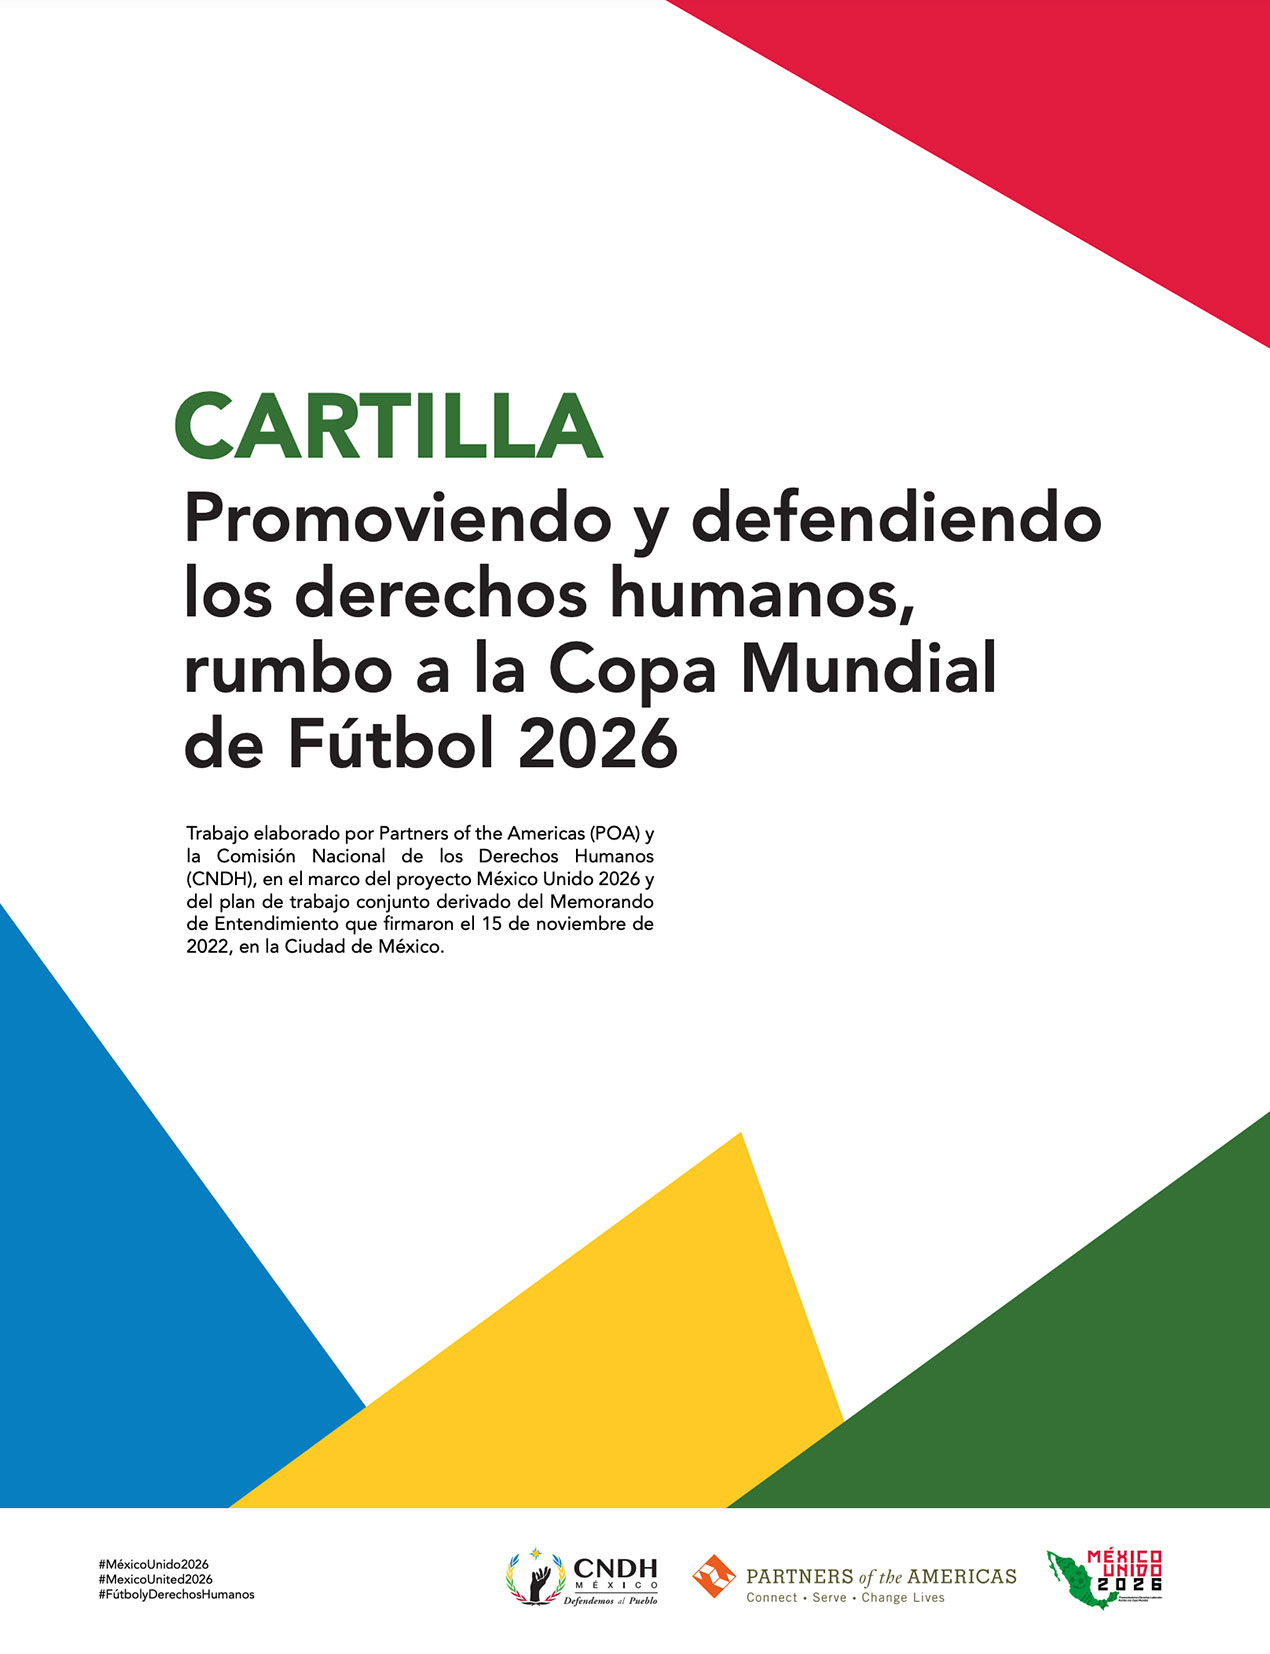 Cartilla Promoviendo y defendiendo los derechos humanos, rumbo a la Copa Mundial de Fútbol 2026